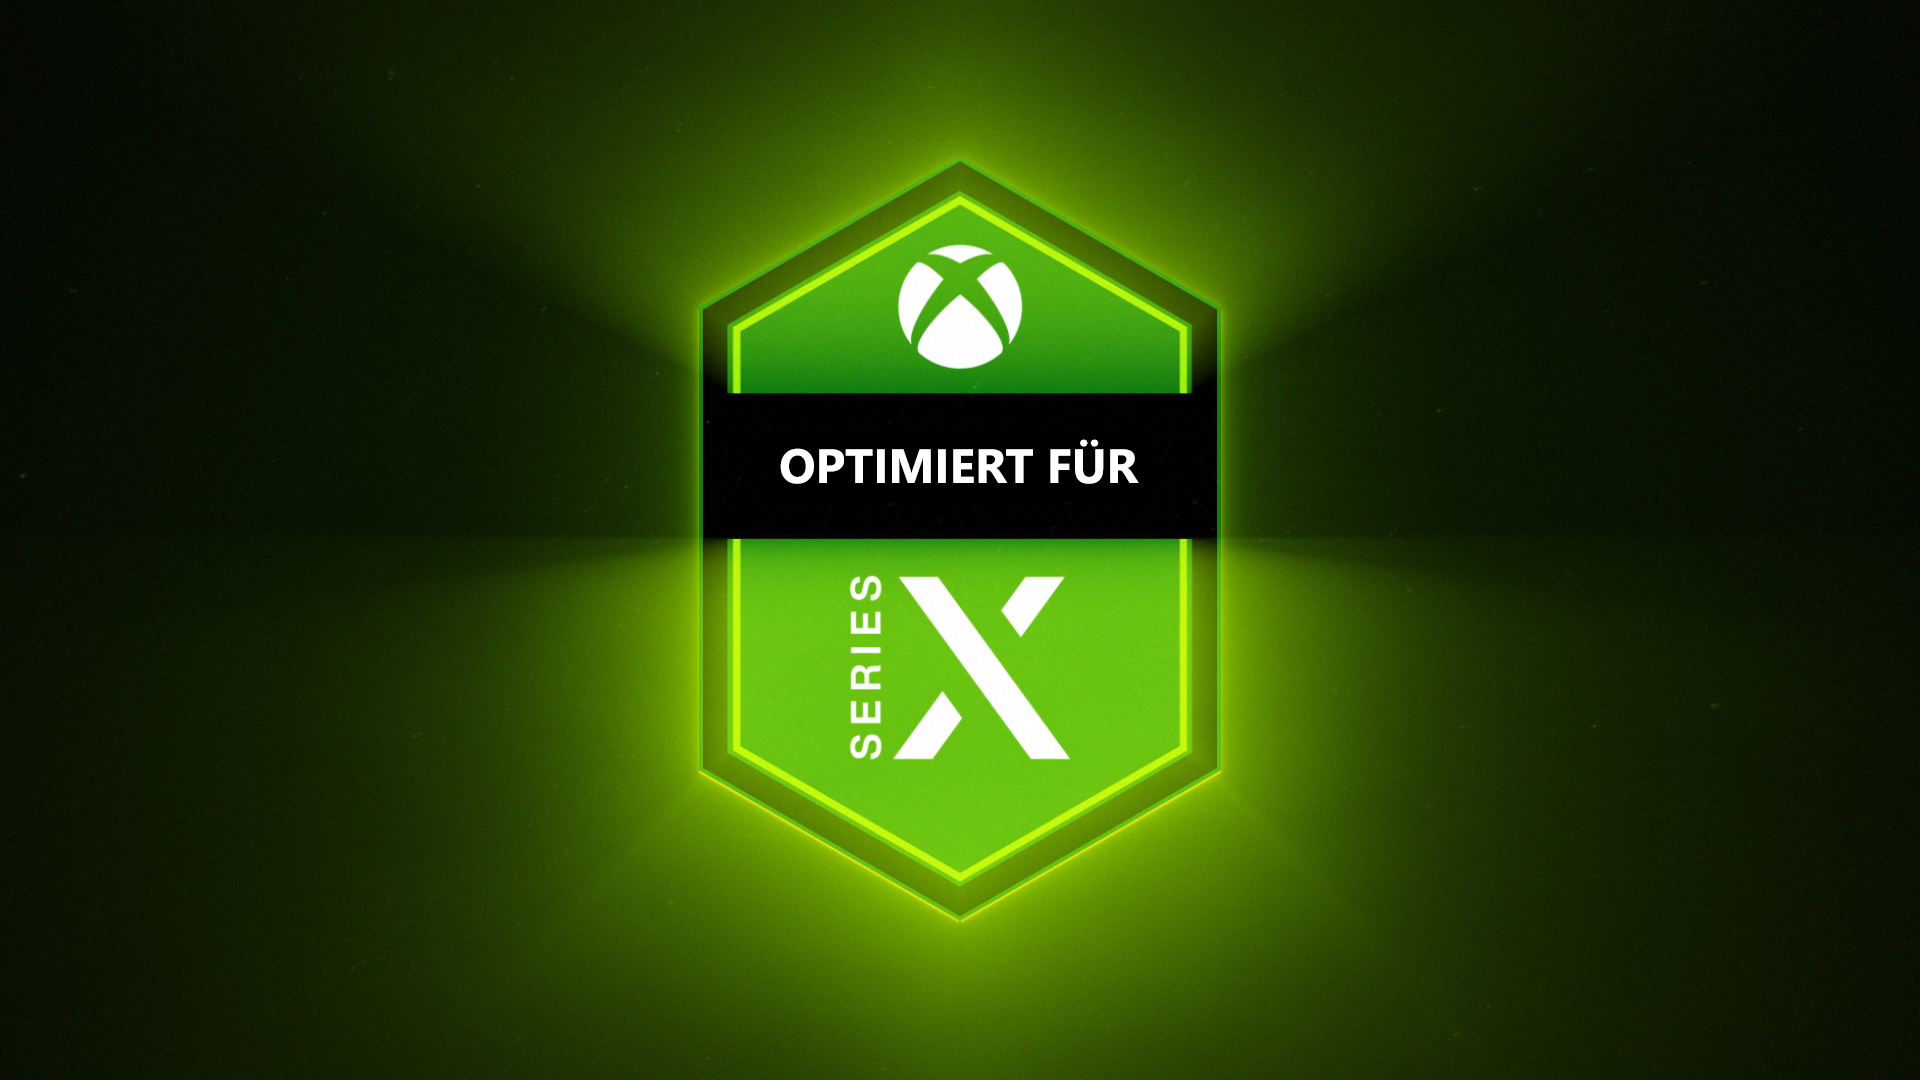 Xbox Series X: Optimiert für Xbox Series X entfesselt die volle Power der Konsole HERO